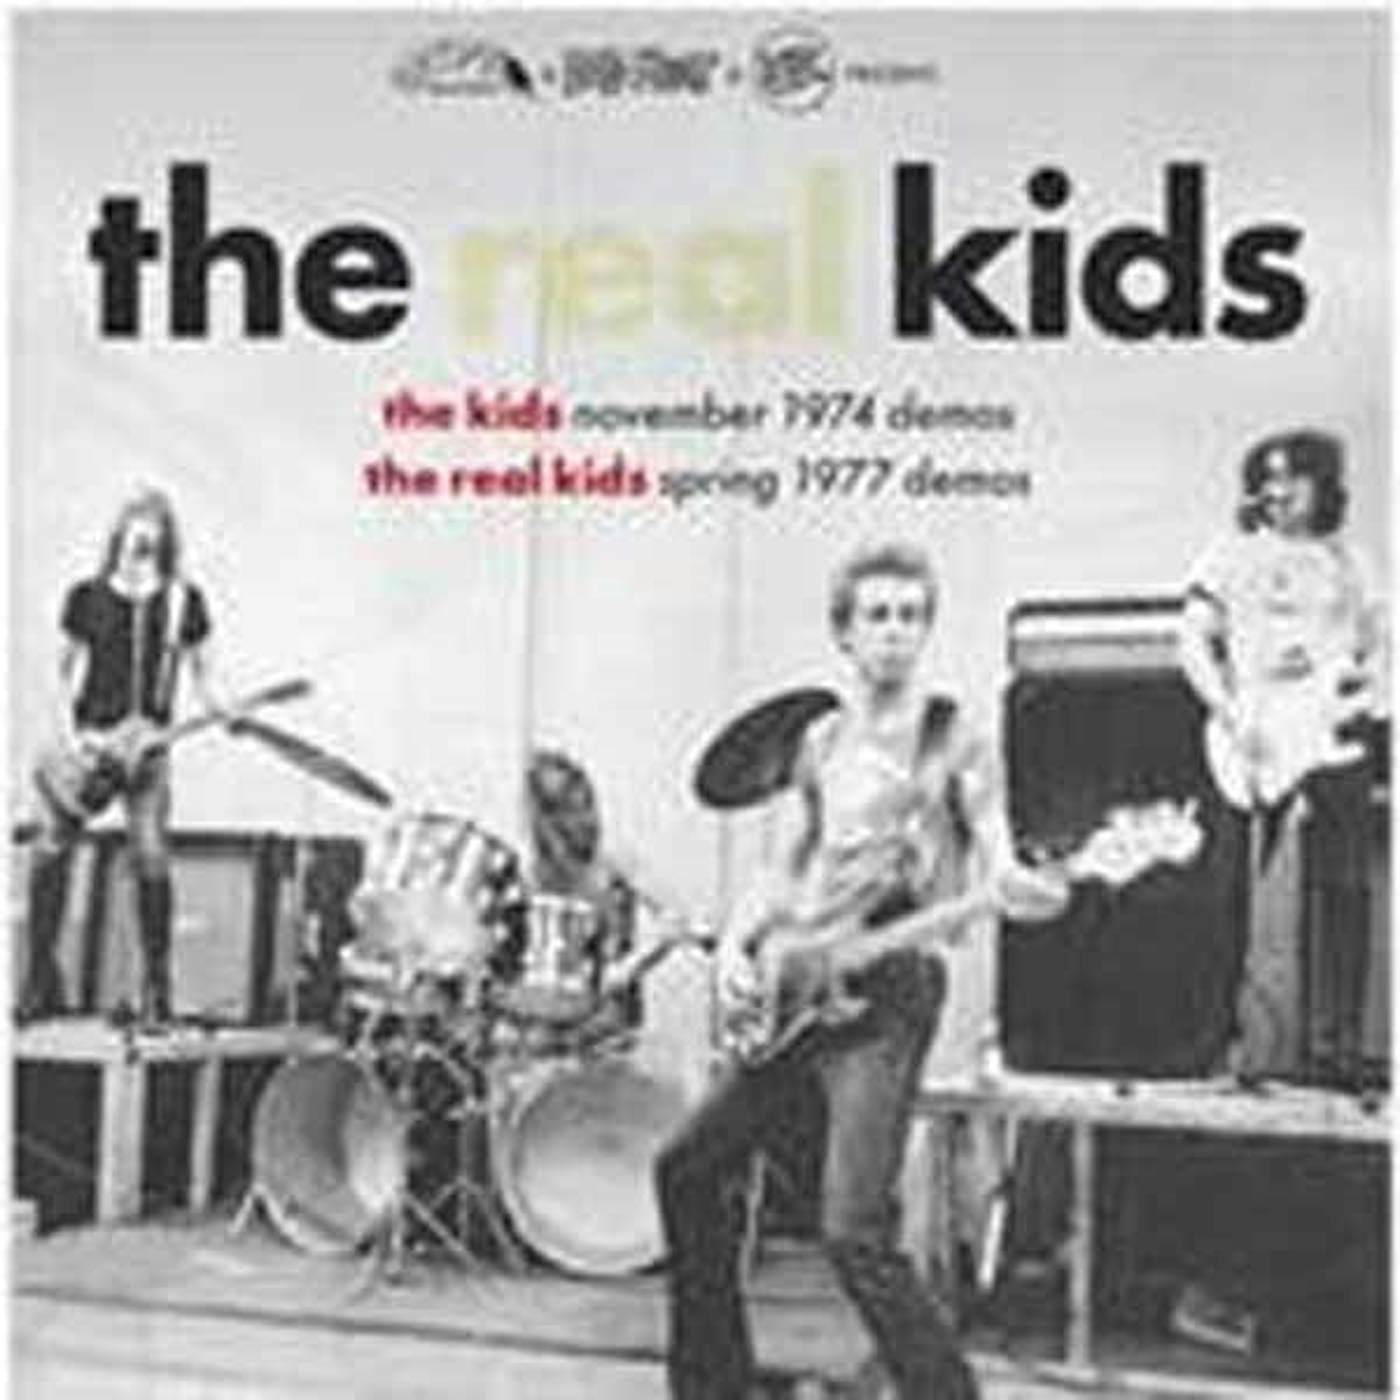 The Real Kids LP - Kids Nov.74 Demos/Real Kids Spring 77 Demos (Vinyl)